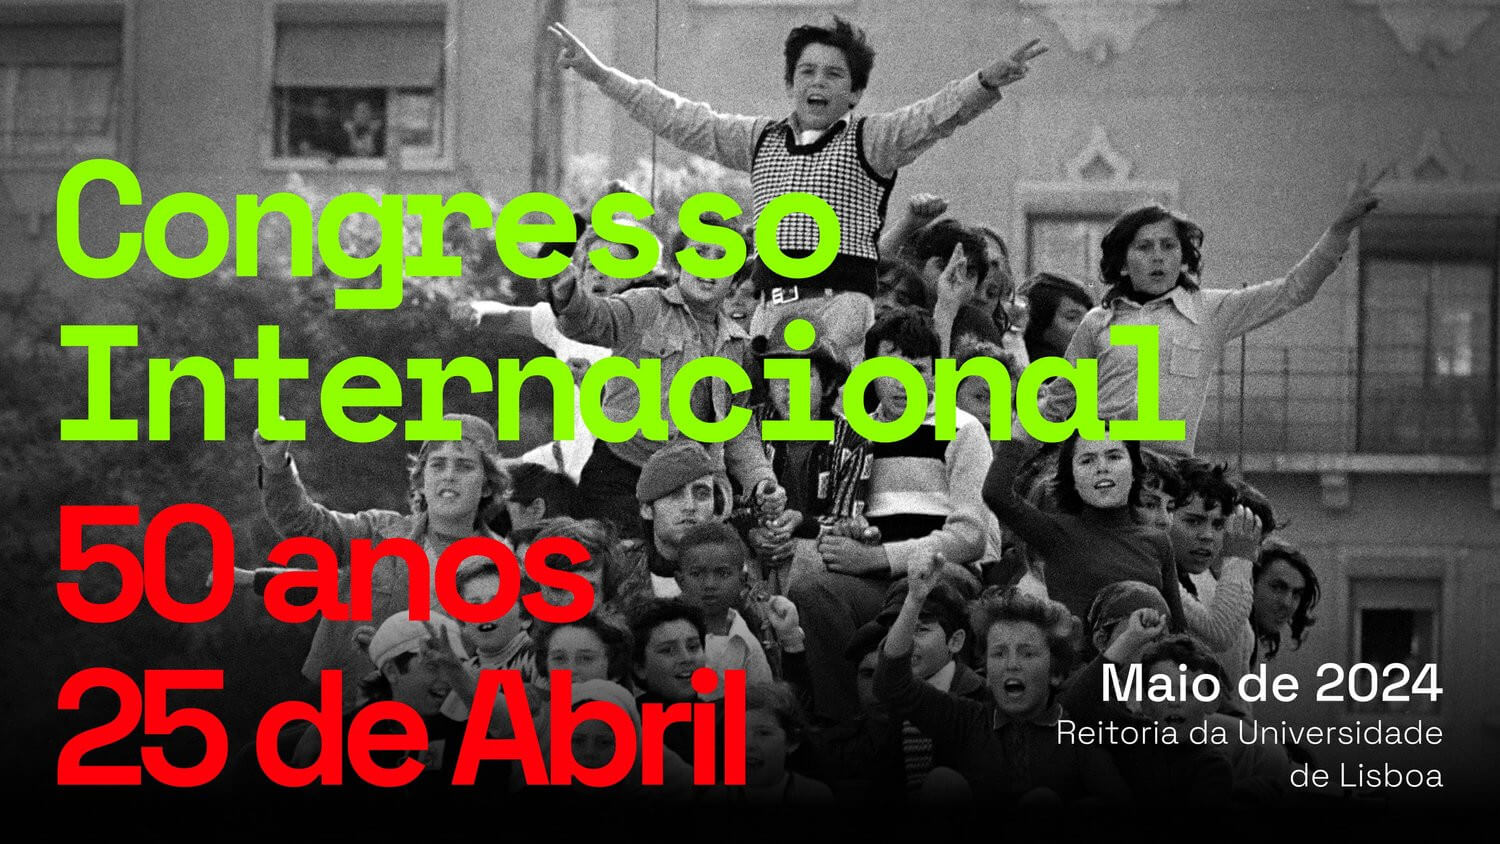 Cartaz do congresso internacional “50 anos do 25 de Abril”. Maio de 2024, na Reitoria da Universidade de Lisboa. O cartaz inclui uma foto de um conjunto de crianças e soldados em cima de um carro de combate, fazendo V de vitória.